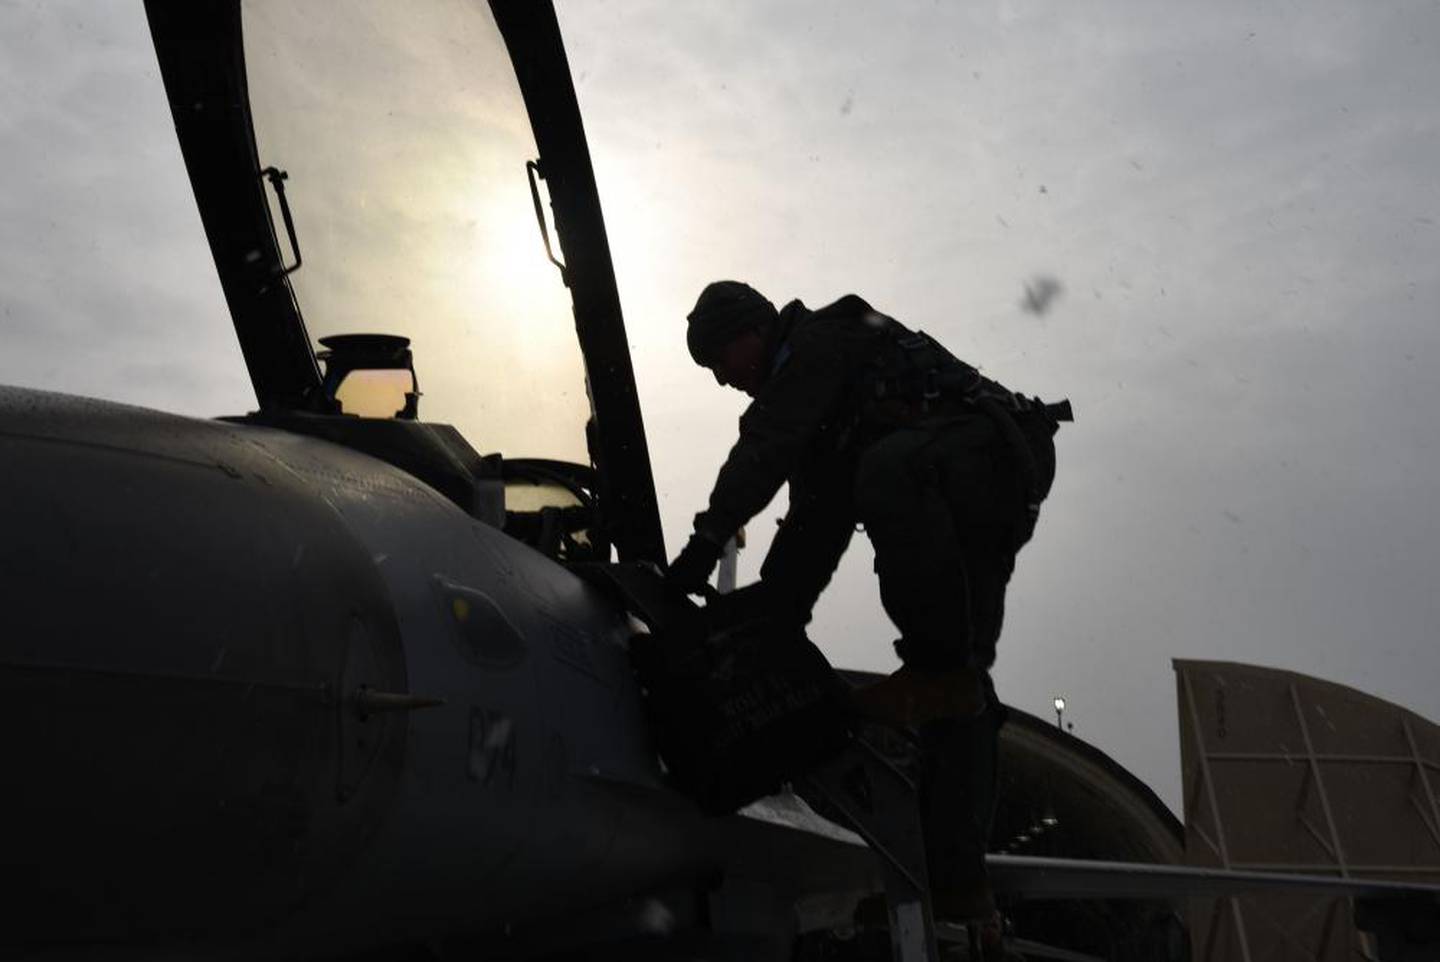 Lt. Gen. Scott Pleus climbs into an F-16 fighter jet